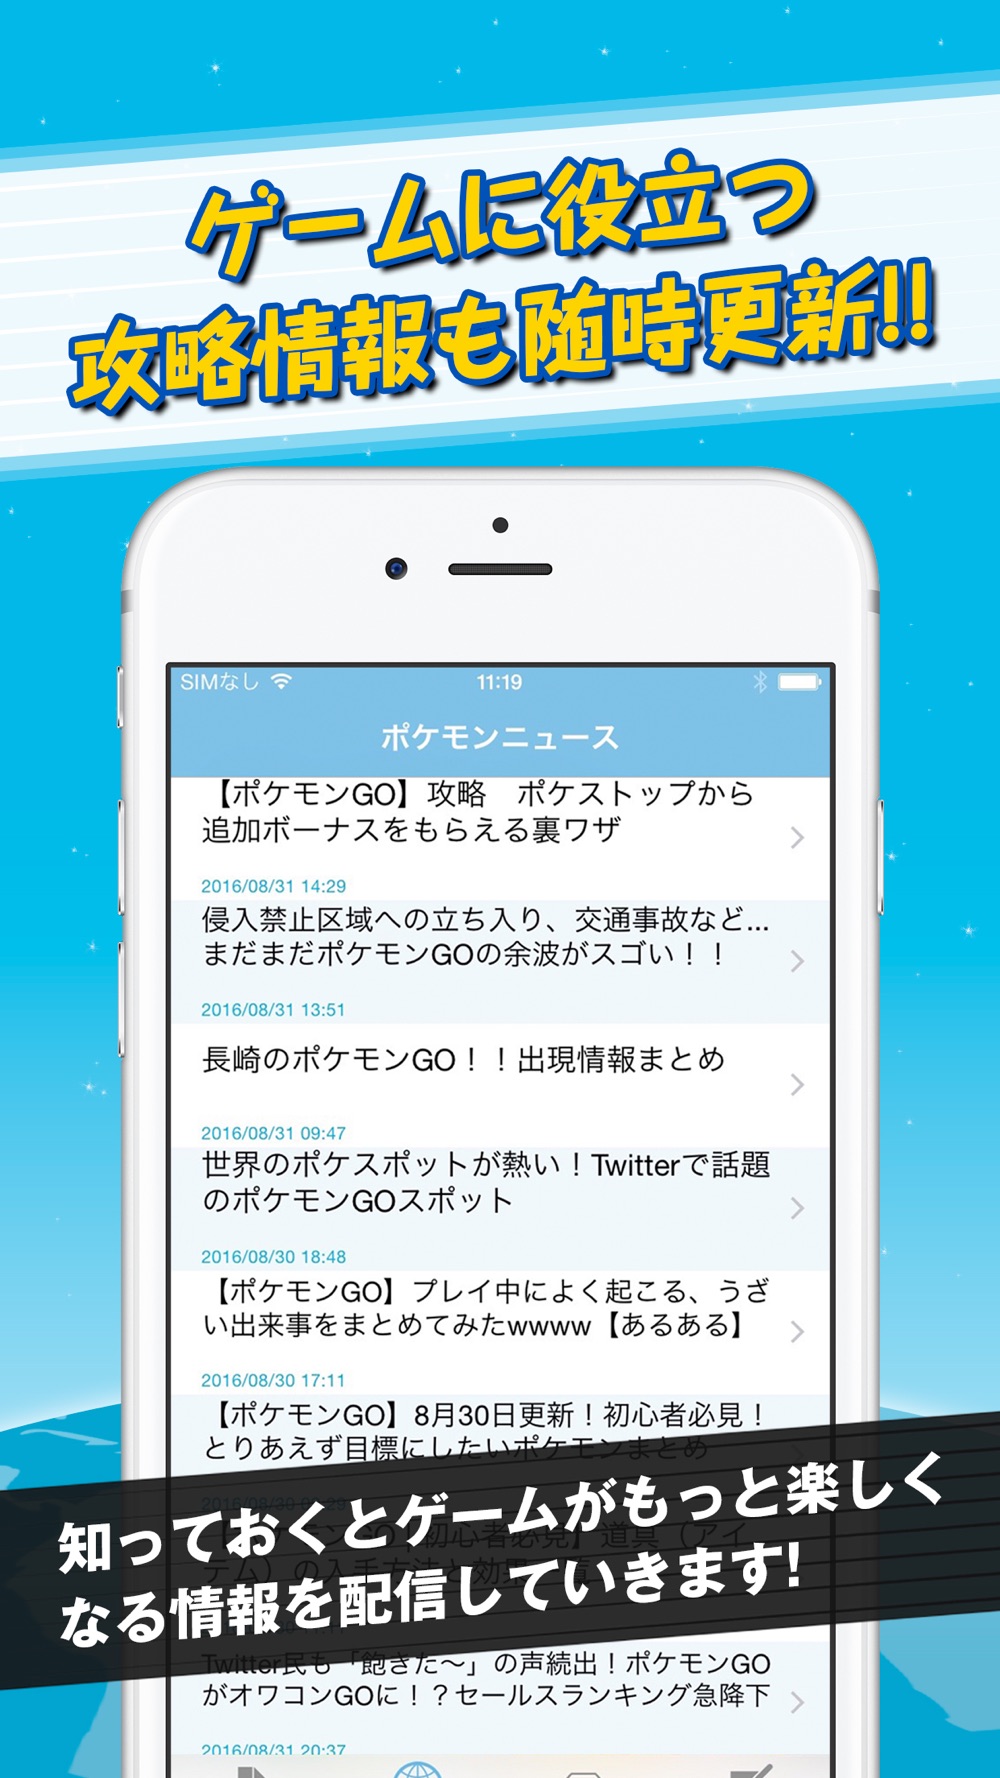 モンスター大図鑑 用語集 For ポケモンgo 攻略情報付き Free Download App For Iphone Steprimo Com